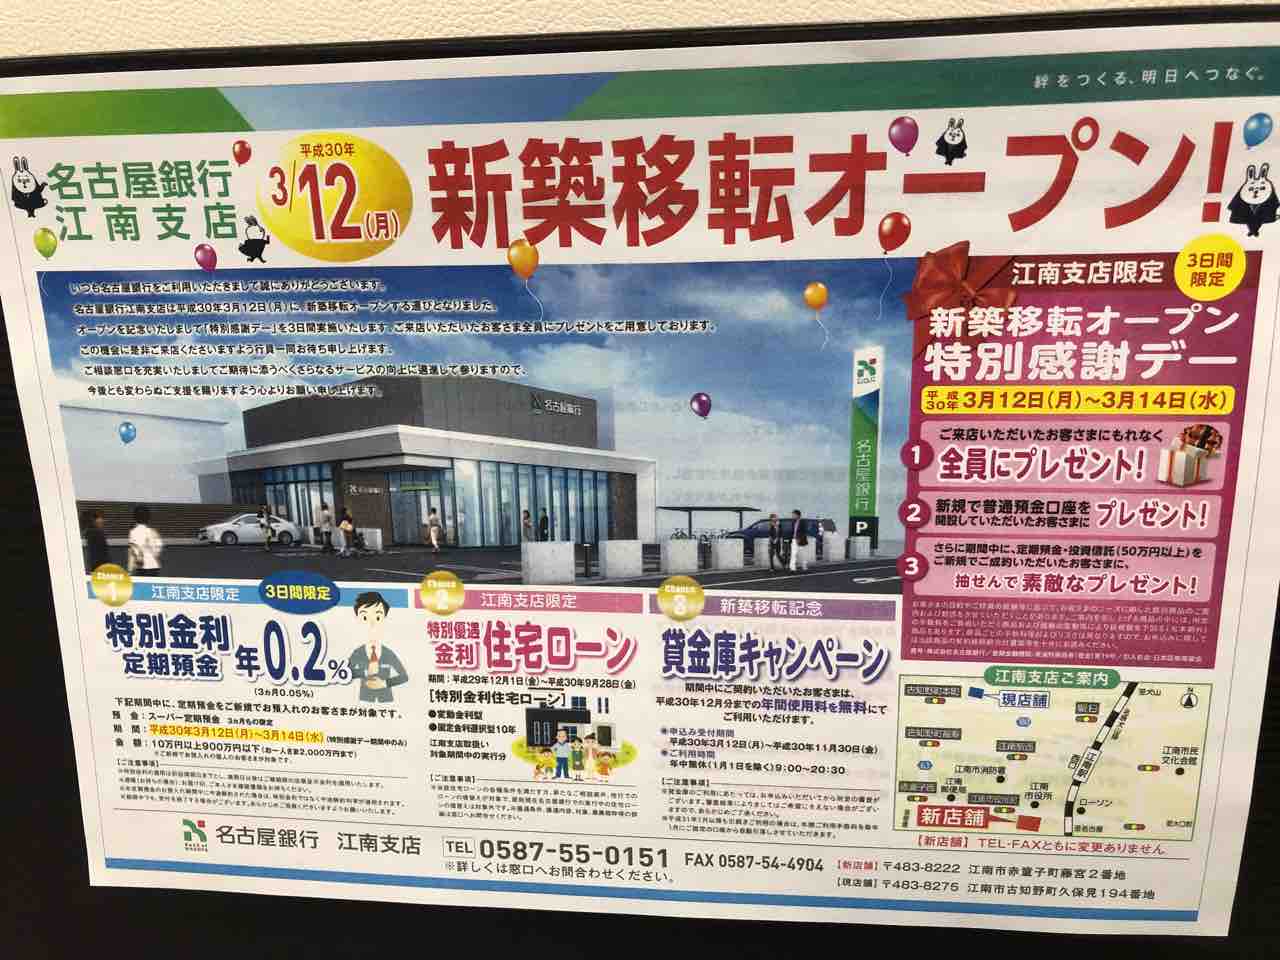 名古屋銀行江南支店 新築移転オープンチラシ